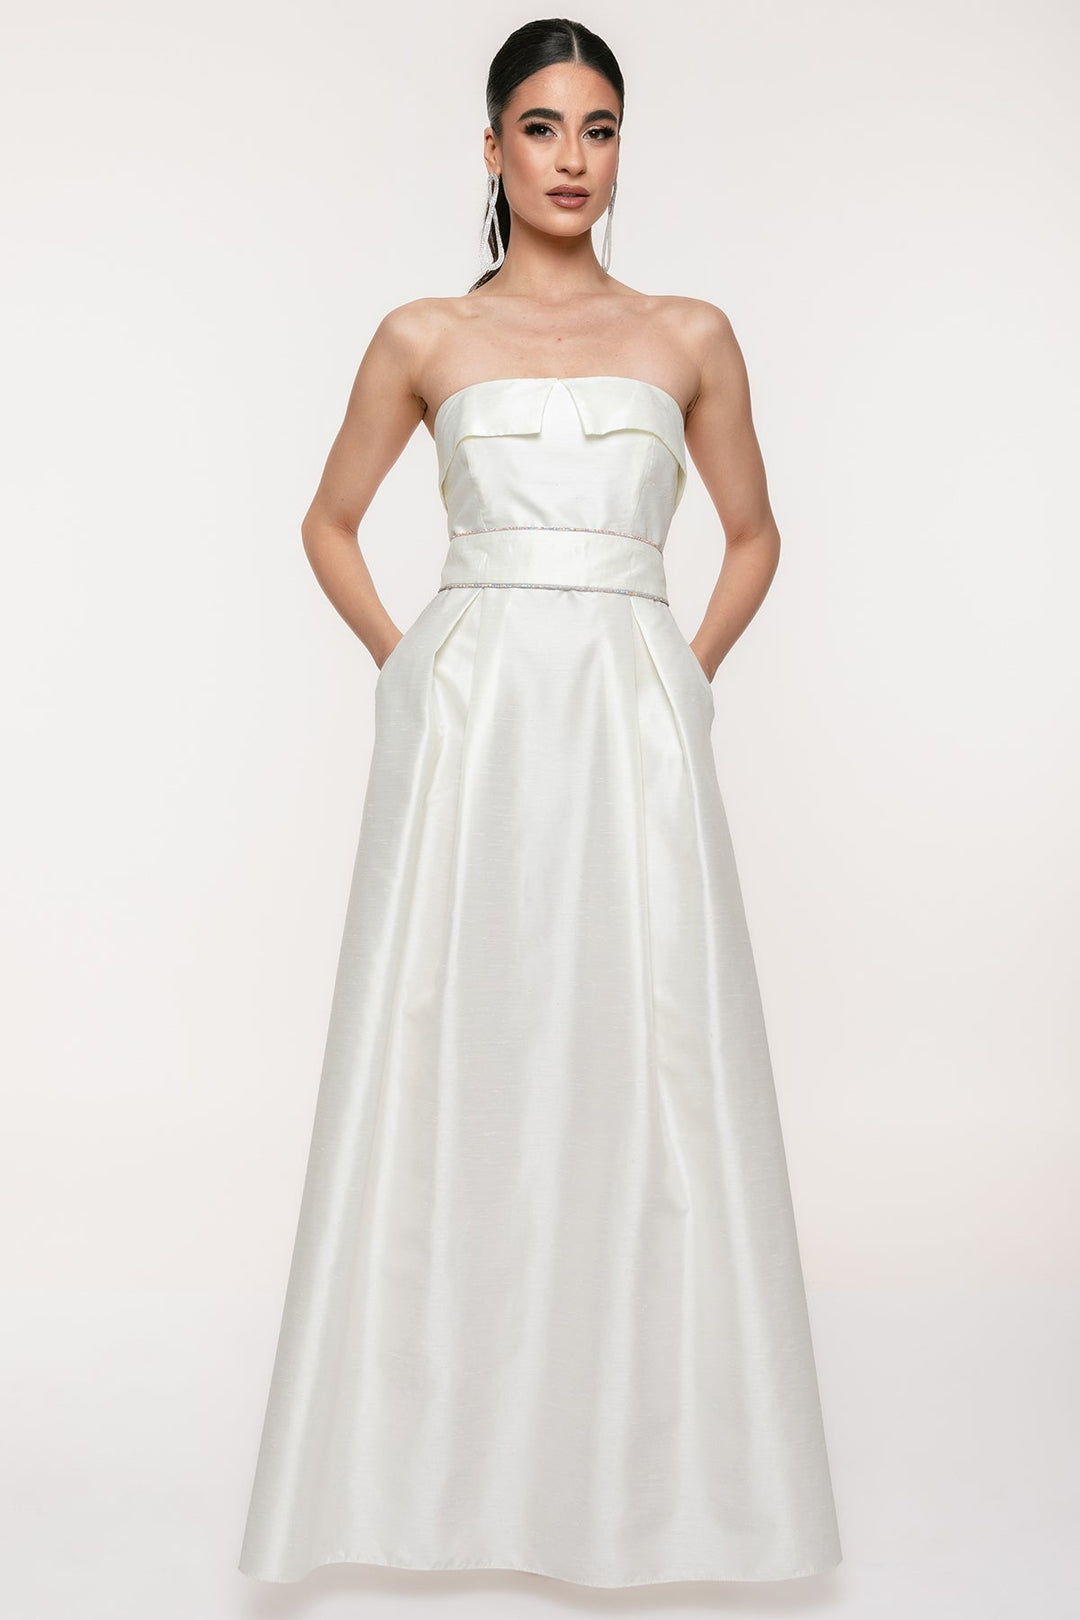 Φόρεμα μάξι λευκό σουα σοβαζ Coelia - A Collection Boutique